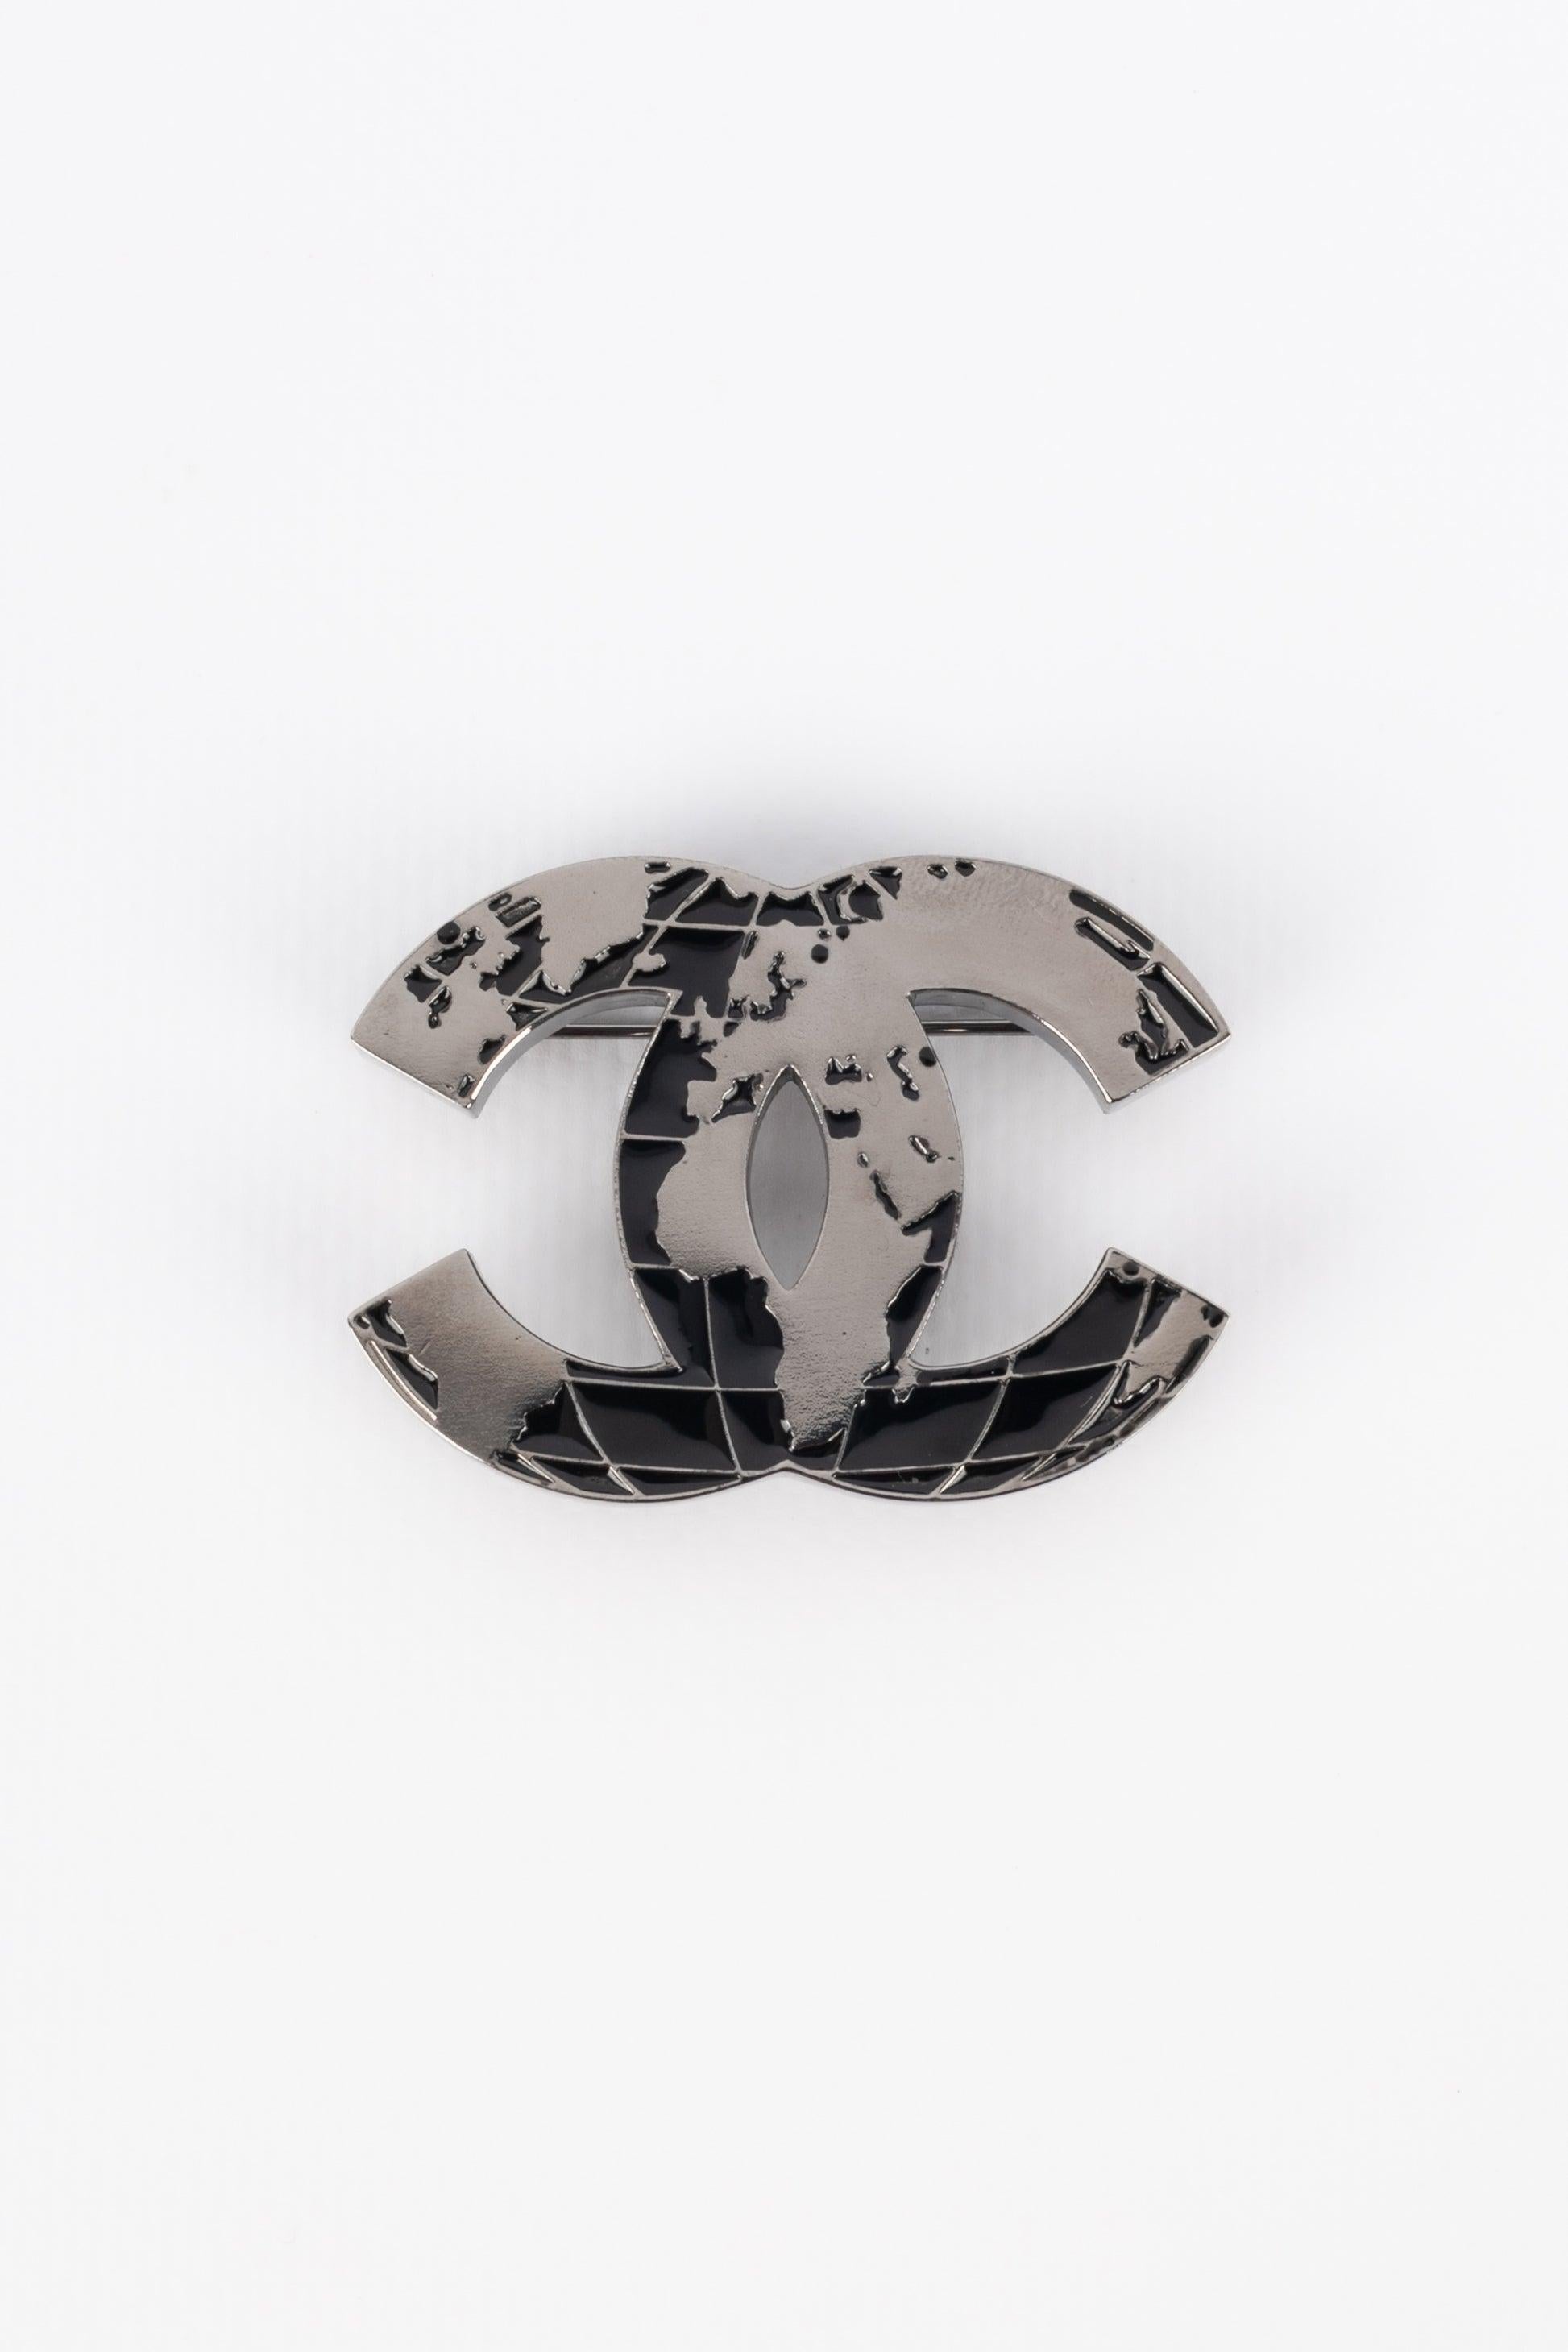 Chanel - (Made in France) Silberne cc-Brosche aus Metall, schwarz emailliert. Collection'S 2013.

Zusätzliche Informationen: 
Zustand: Sehr guter Zustand
Abmessungen: 4,5 cm x 5 cm
Zeitraum: 21. Jahrhundert
 
Sellers Referenz: BRB79